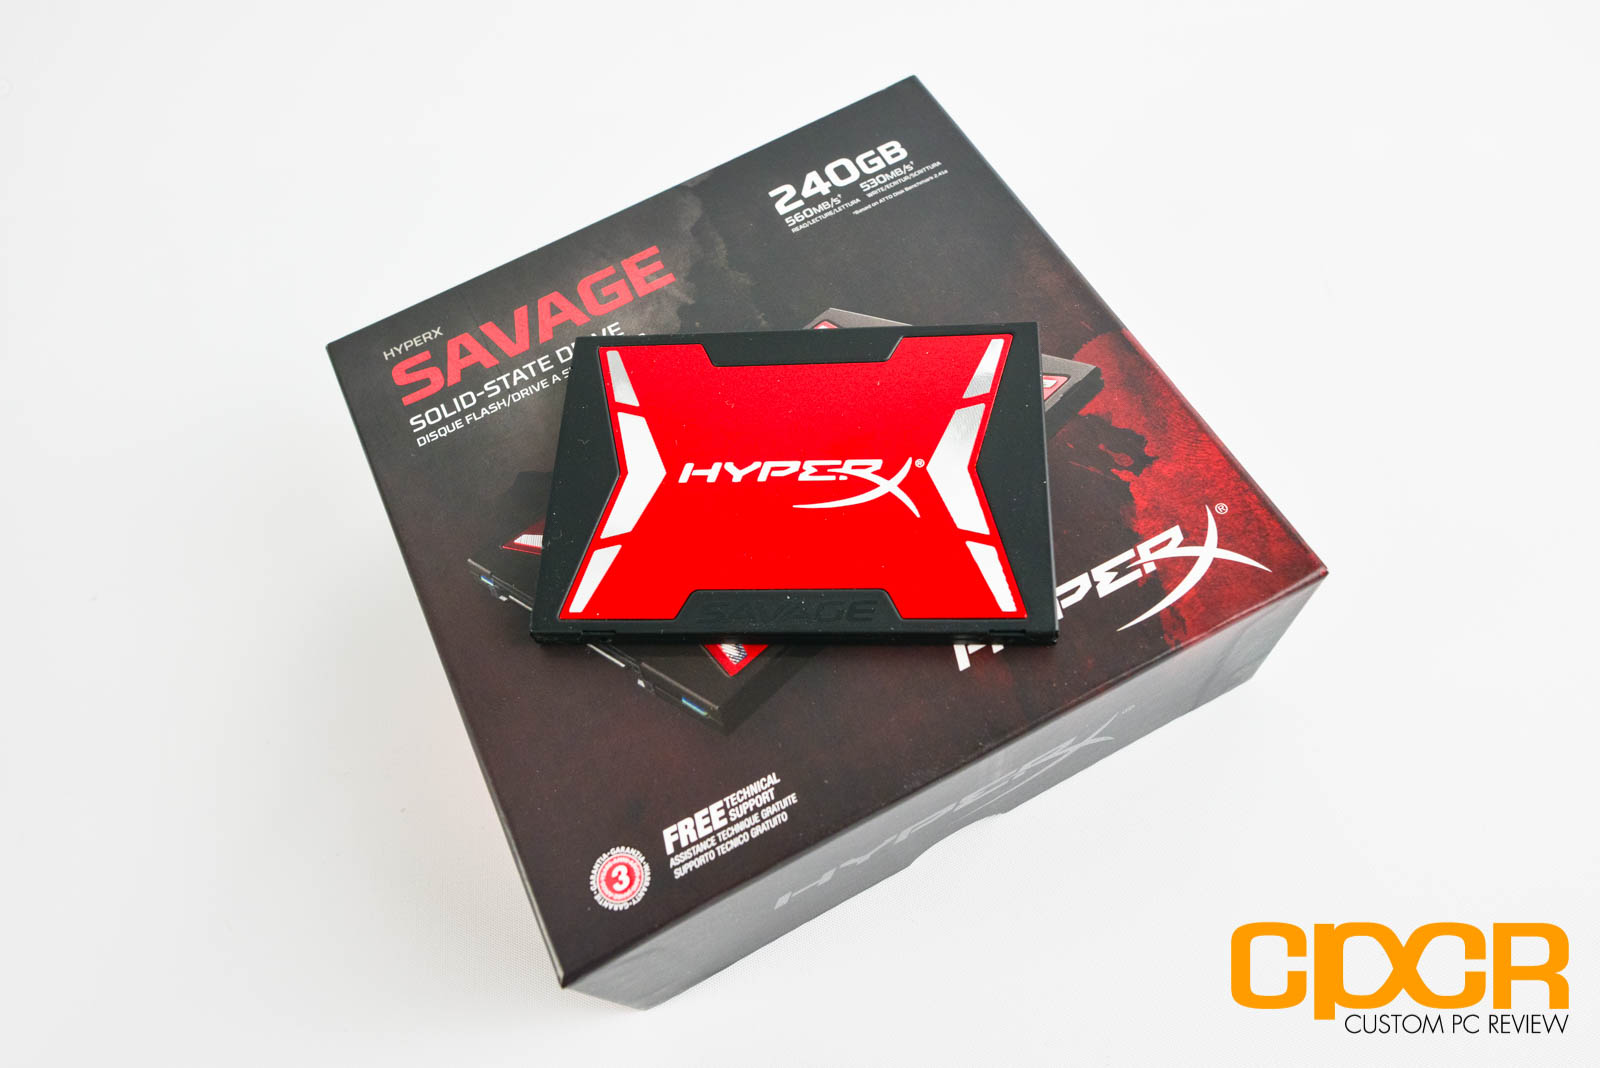 Review: Kingston HyperX Savage 240GB SSD